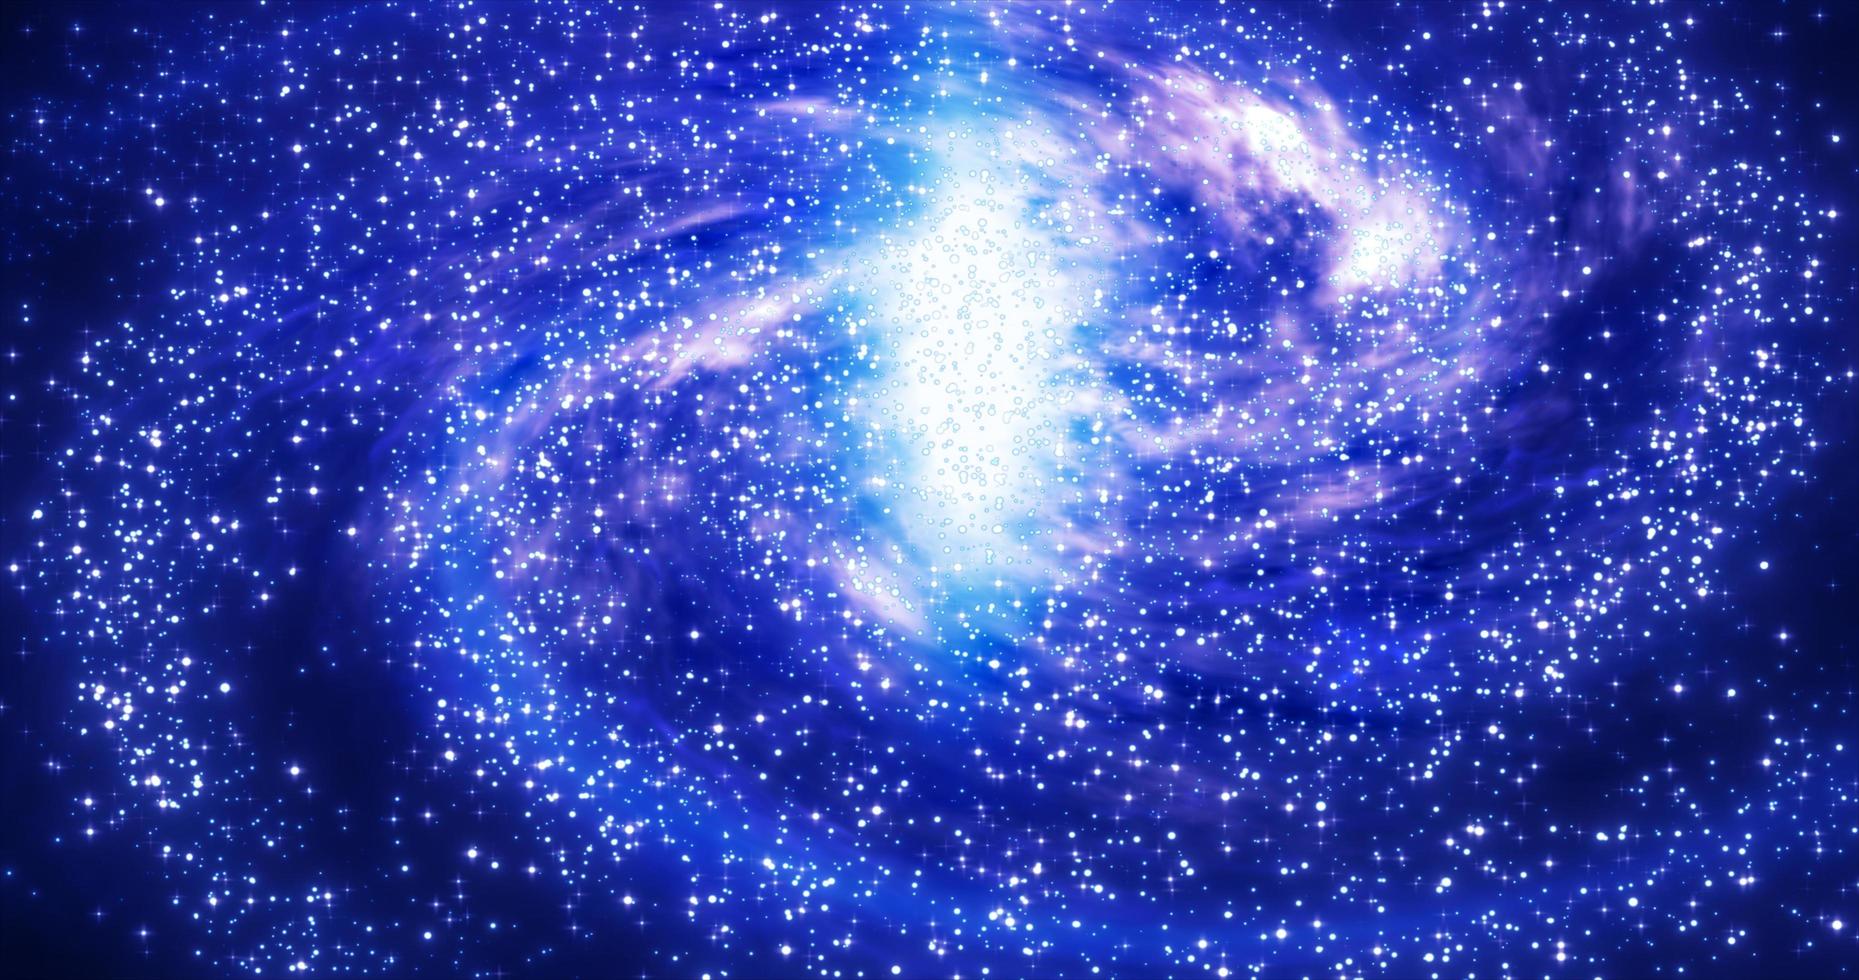 abstrakte raumblaue galaxie mit sternen und sternbildern futuristisch mit glüheffekt, abstrakter hintergrund foto